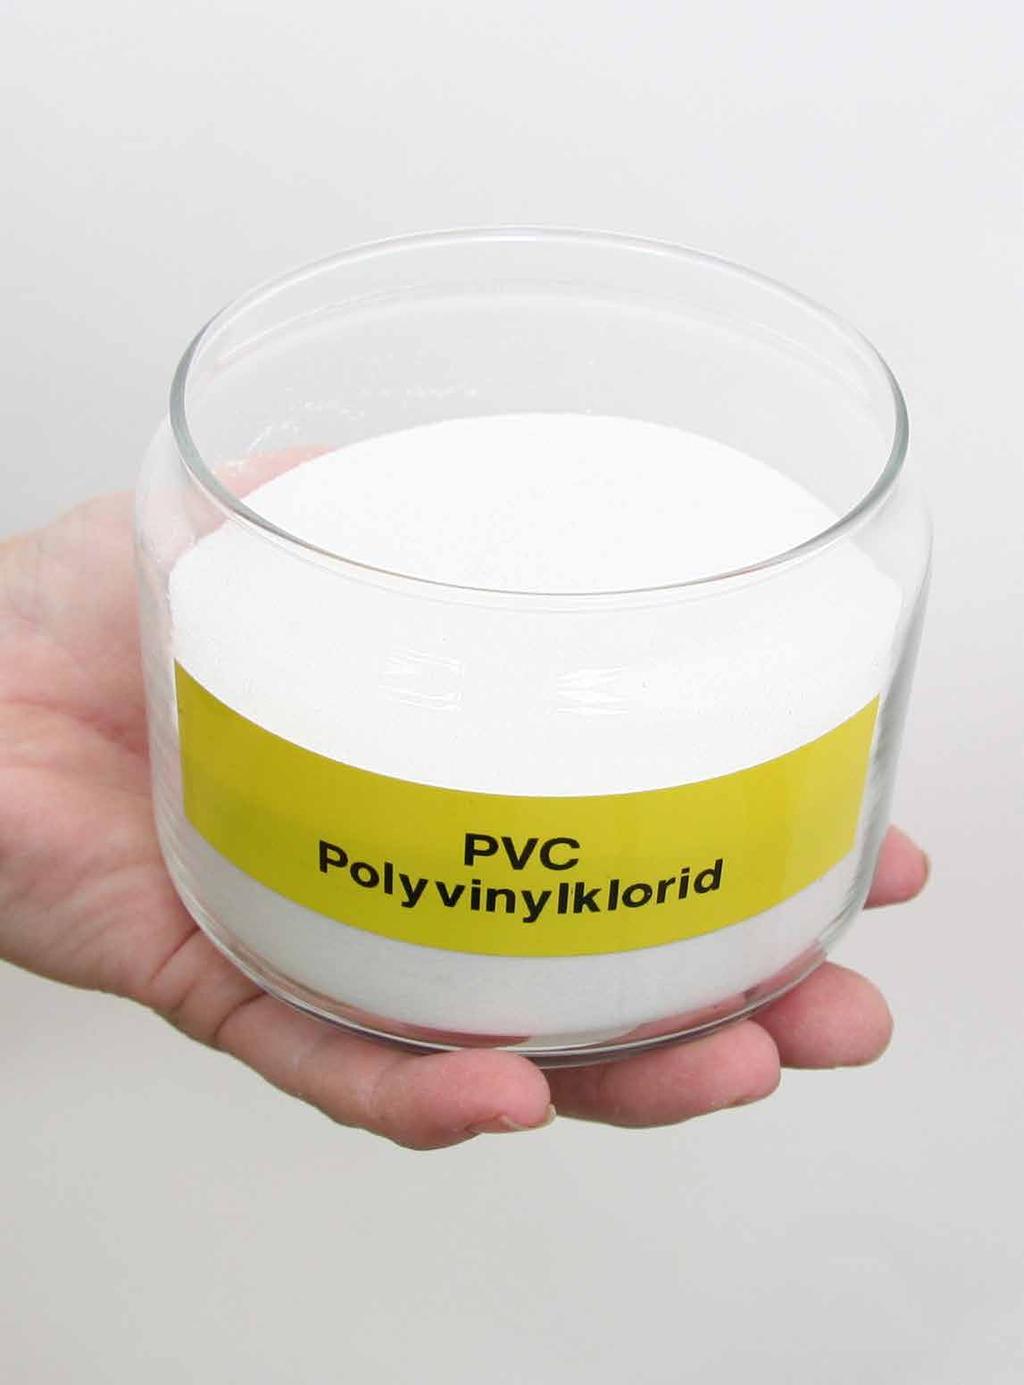 PIPES FOR LIFE PVC-rør har mange fordeler og gir god